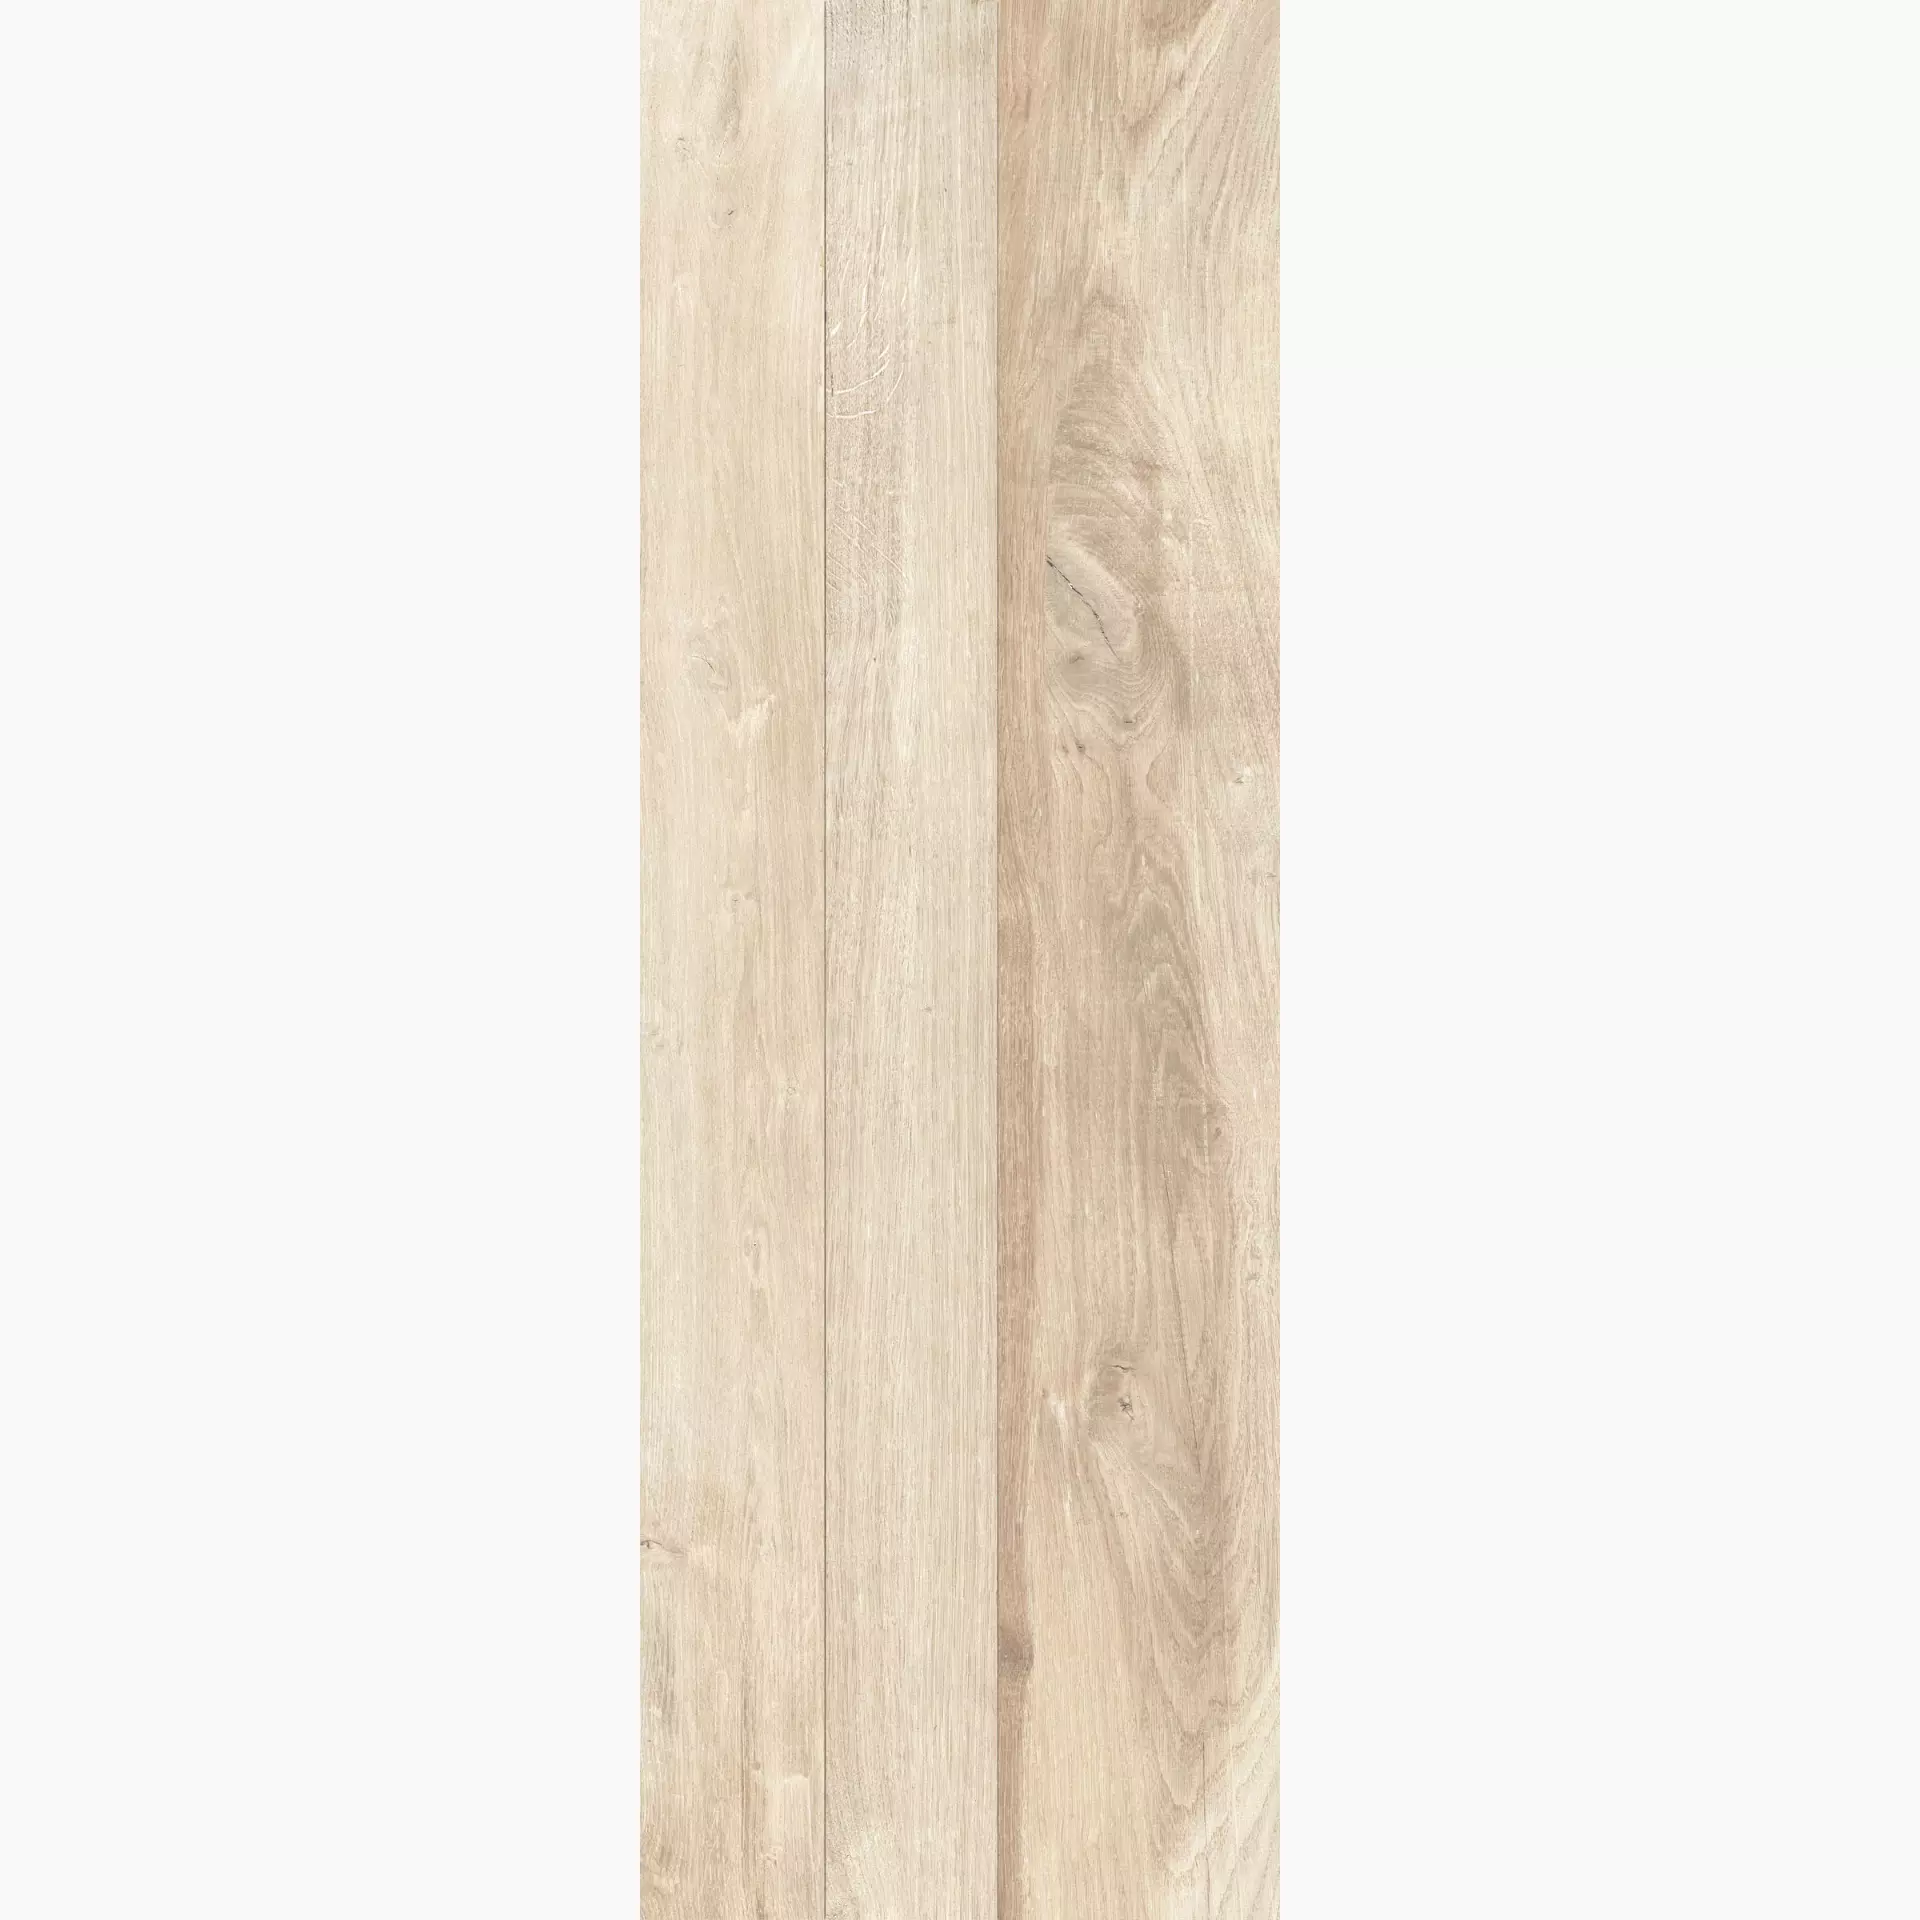 KRONOS Woodside Oak Grip Decor Doga 2.0 6651 40x120cm rectified 20mm